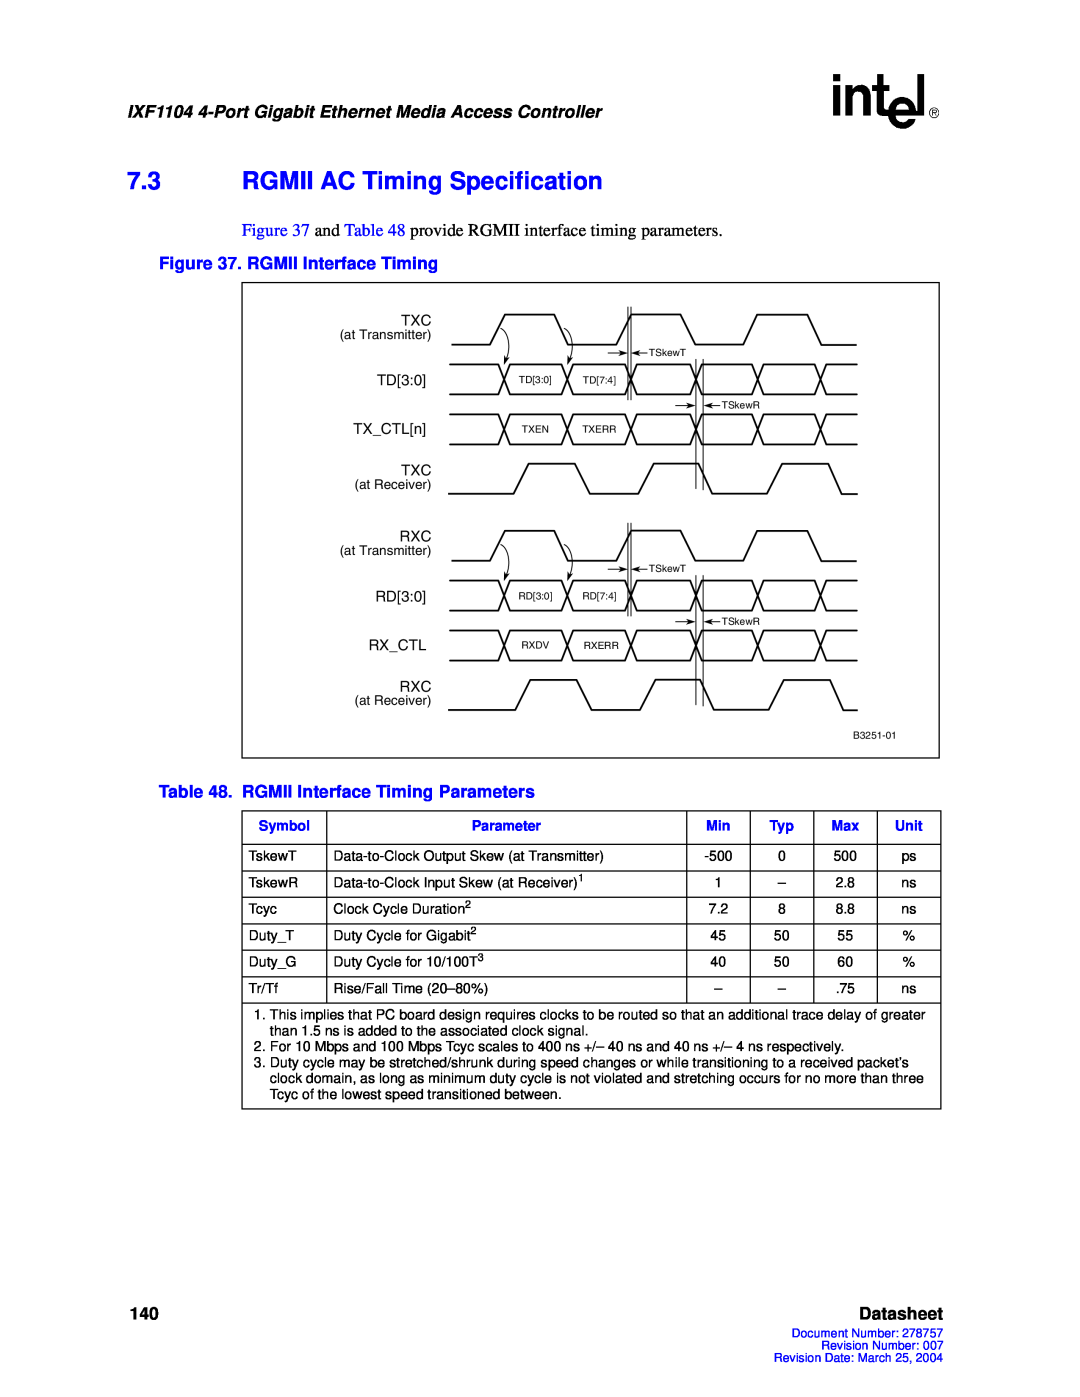 Intel IXF1104 manual 7.3RGMII AC Timing Specification, Datasheet 